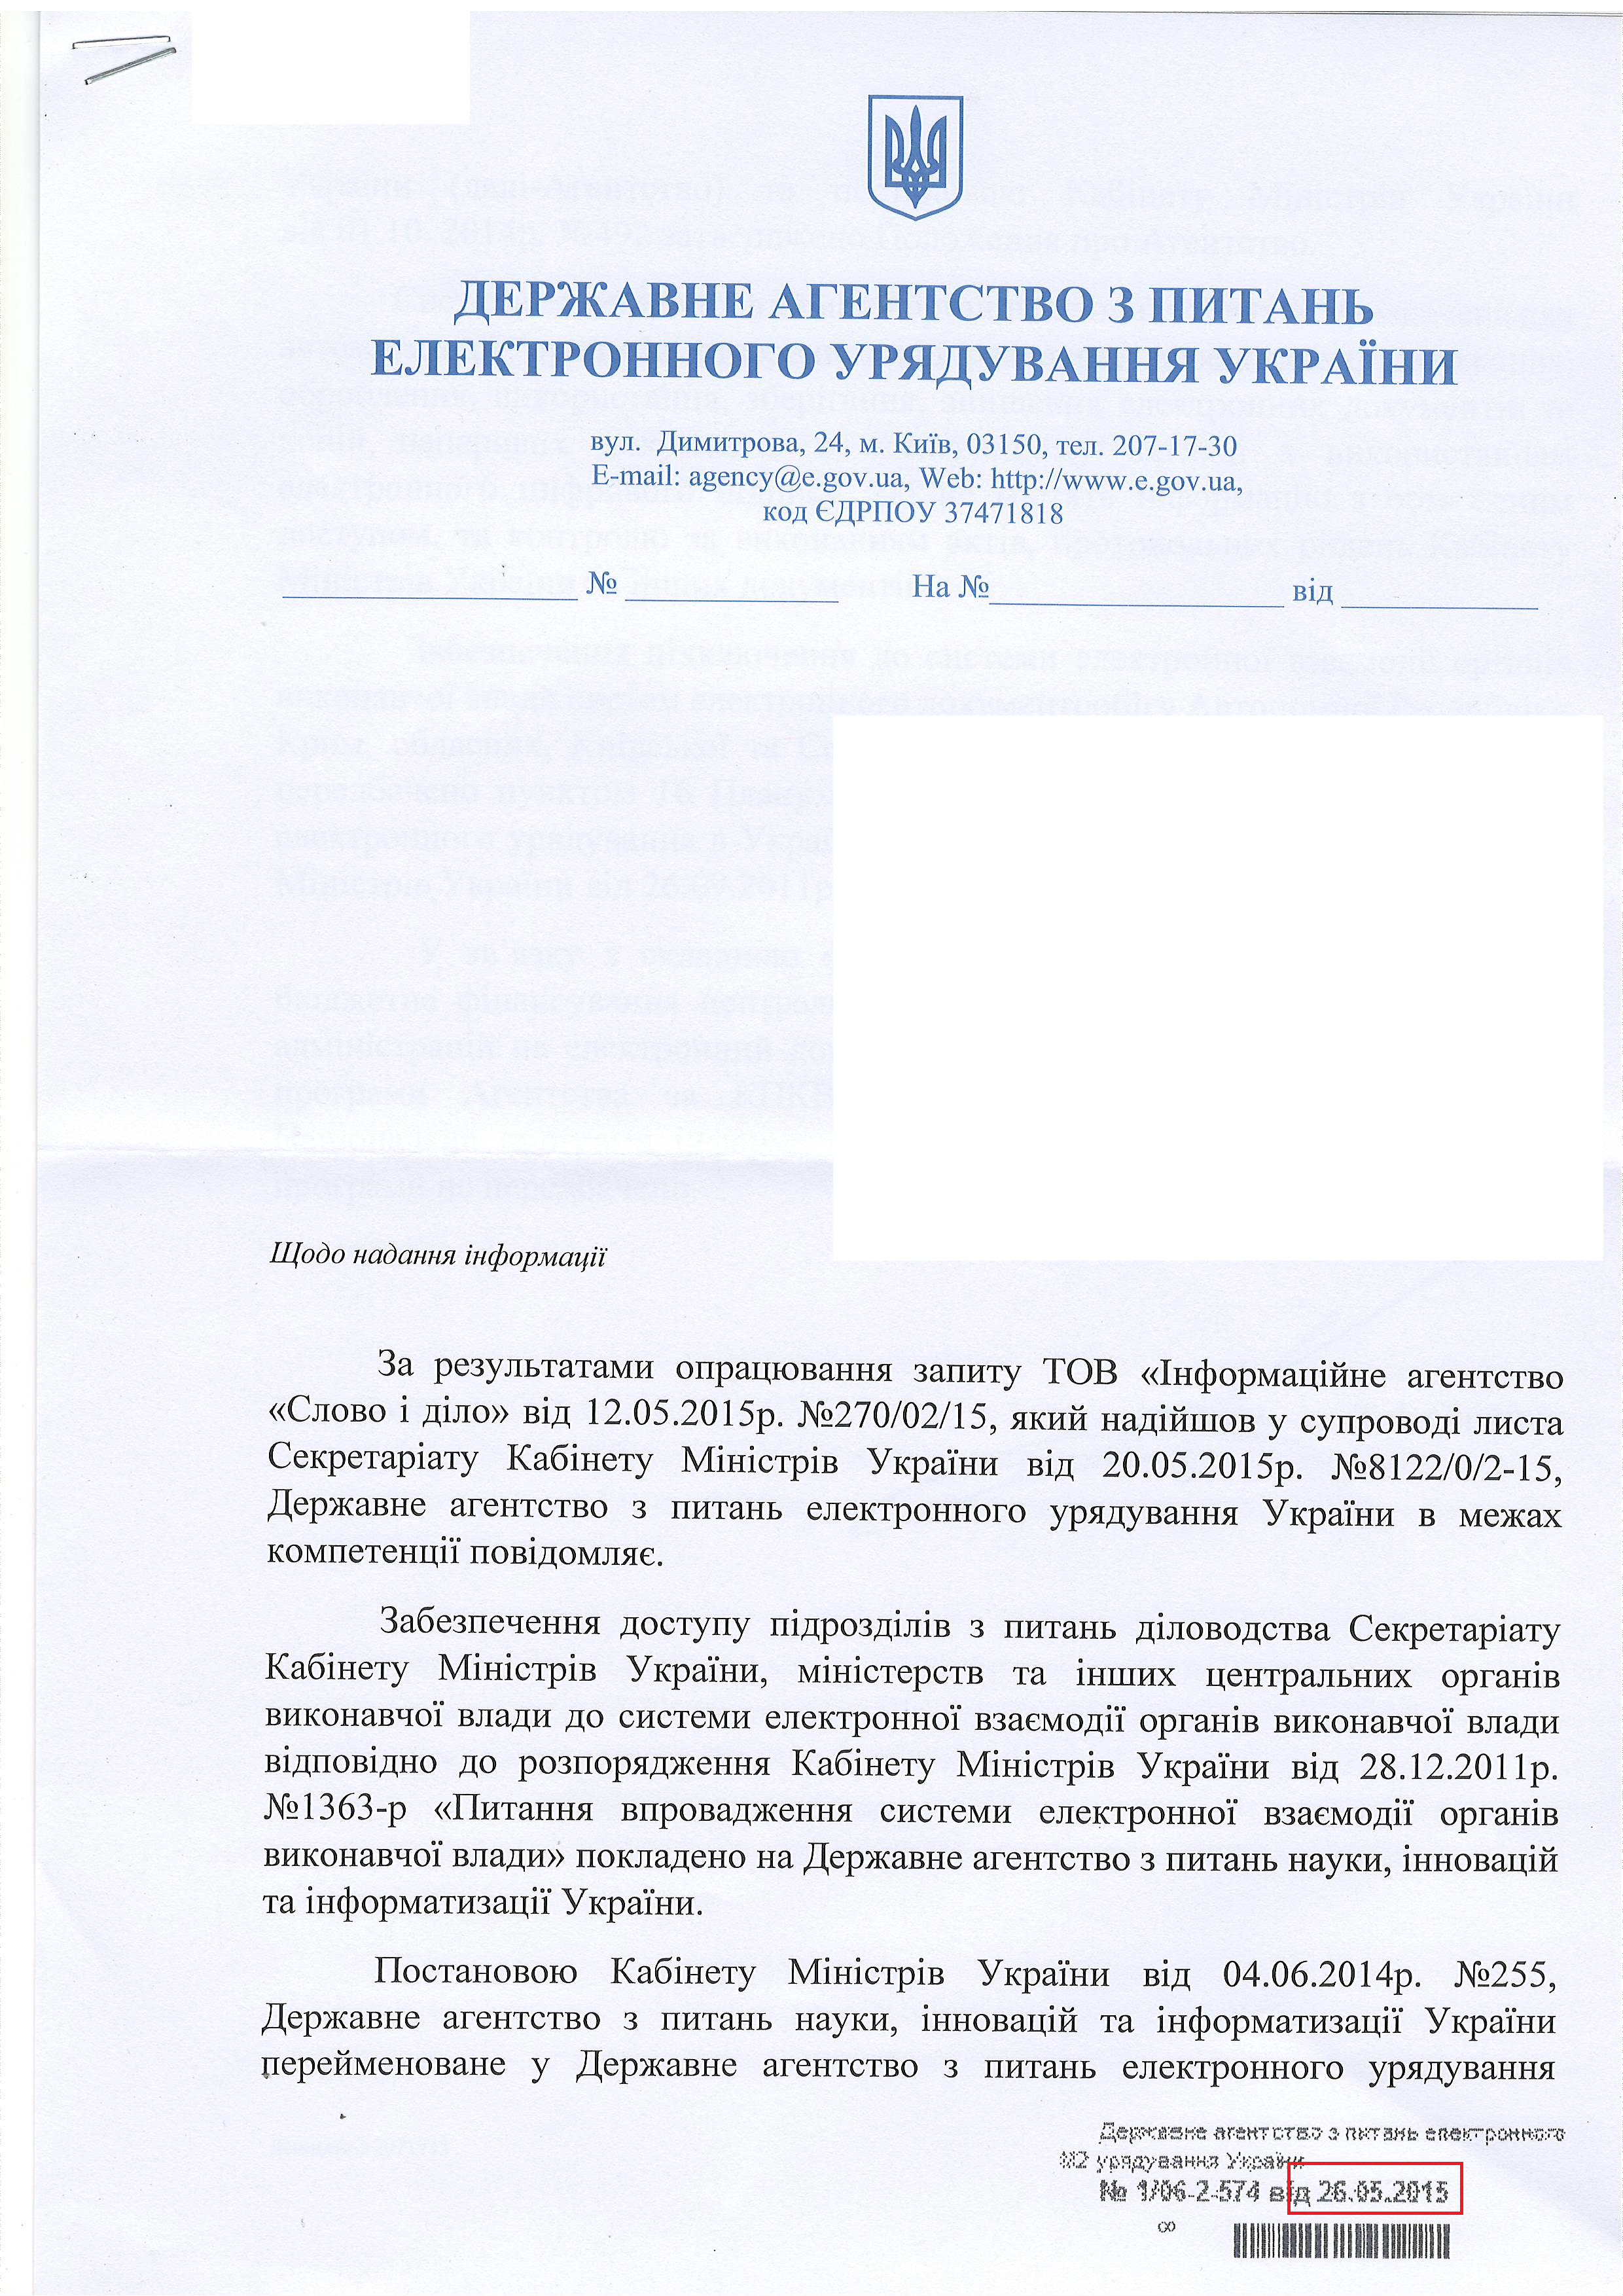 лист державного агенства з питань електронного урядування України від 26 травня 2015 року